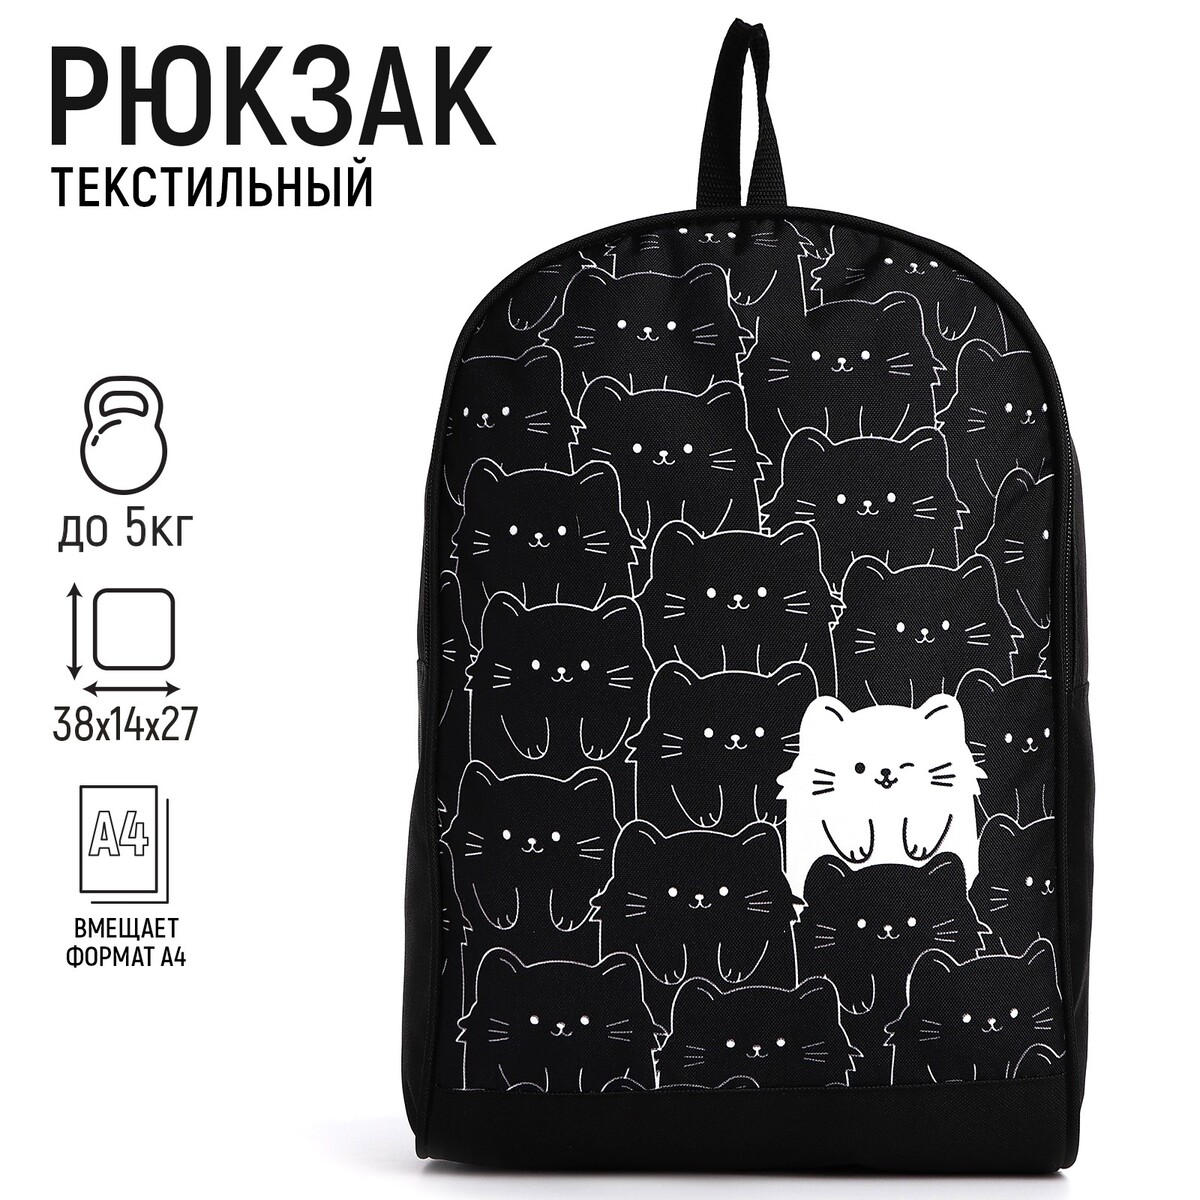 Рюкзак текстильный котики, 38х14х27 см, цвет черный NAZAMOK